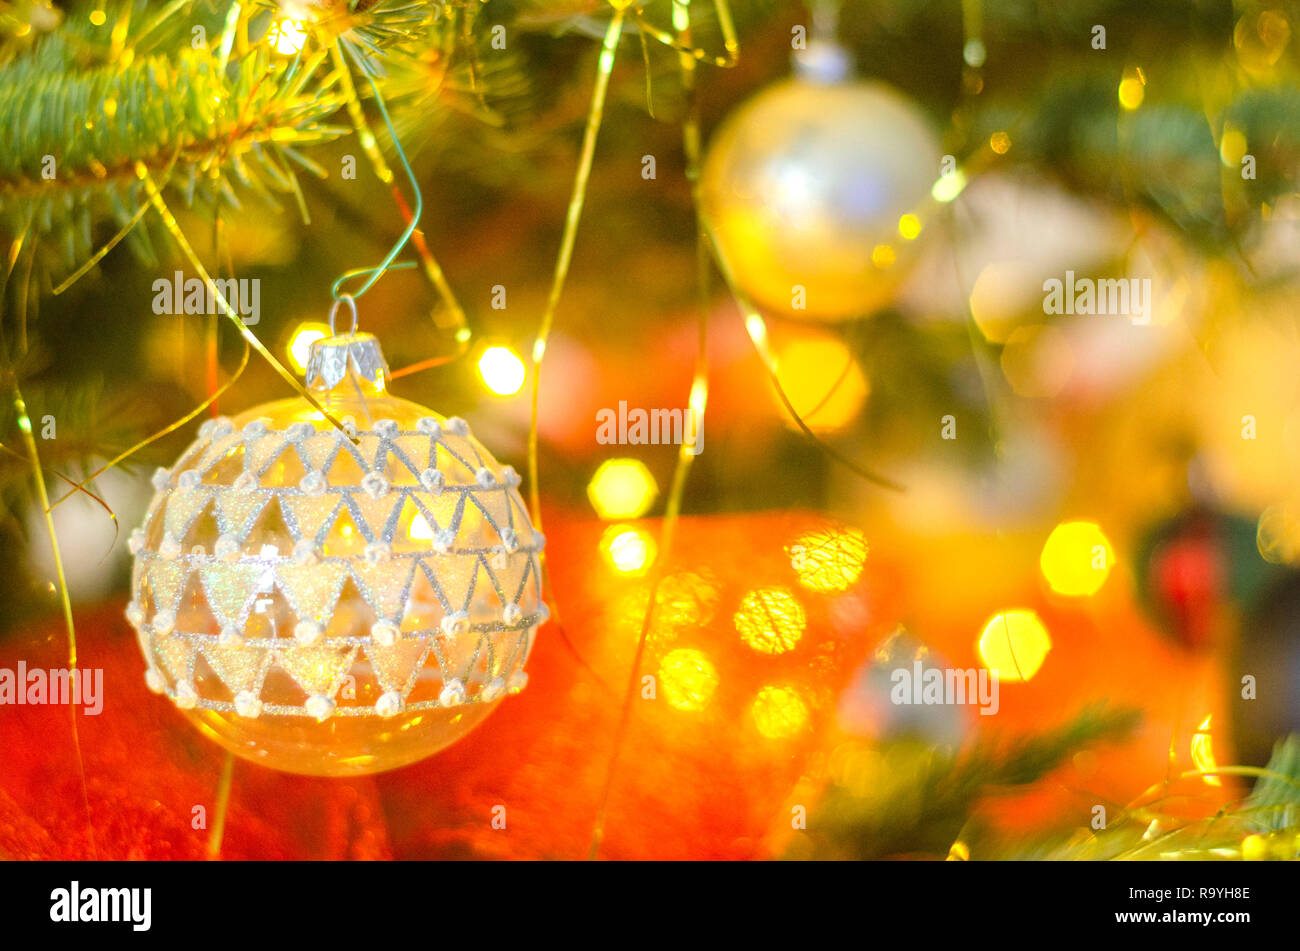 Christmas balls on christmas tree Stock Photo